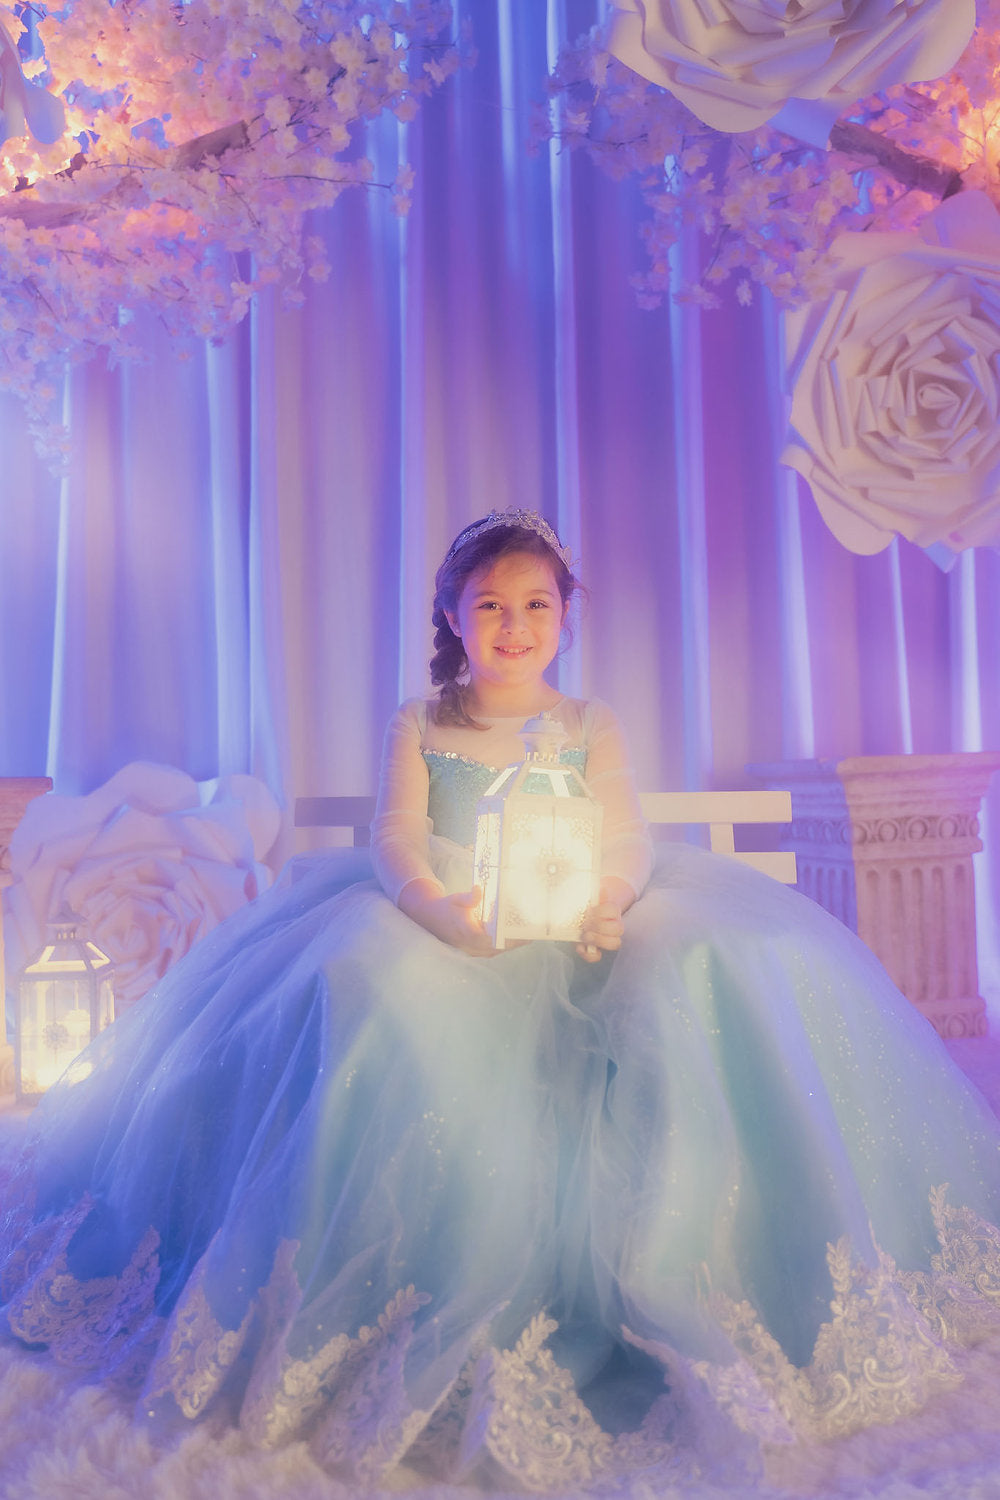 Queen Elsa Blue Sequin Gown